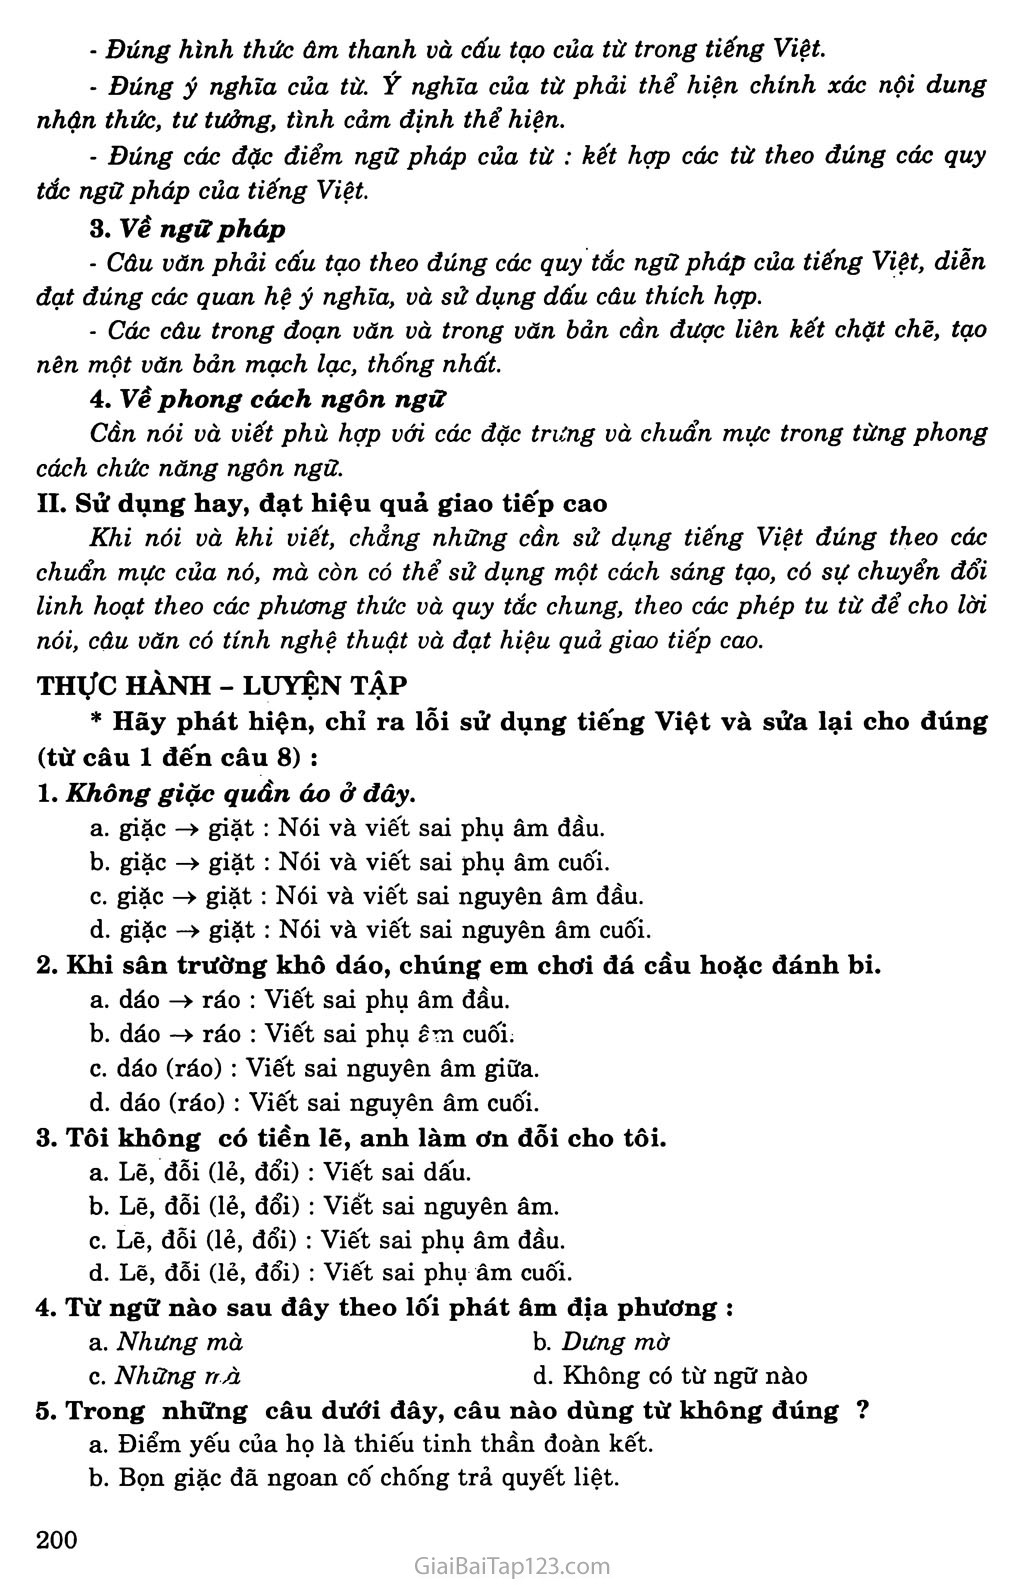 Những yêu cầu về sử dụng Tiếng Việt trang 2